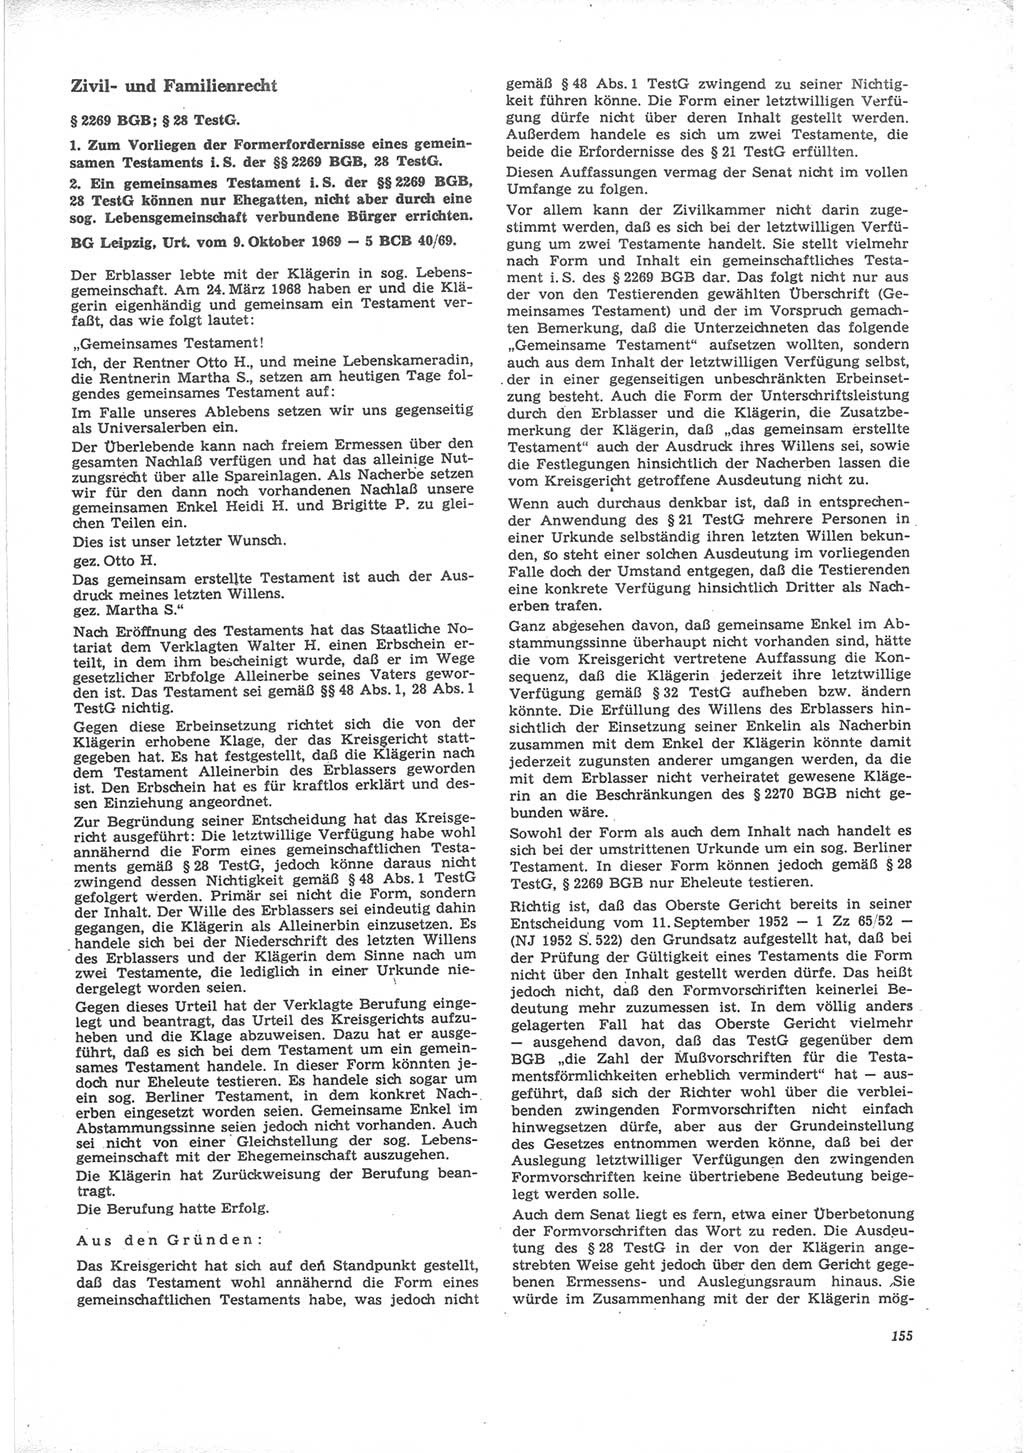 Neue Justiz (NJ), Zeitschrift für Recht und Rechtswissenschaft [Deutsche Demokratische Republik (DDR)], 24. Jahrgang 1970, Seite 155 (NJ DDR 1970, S. 155)